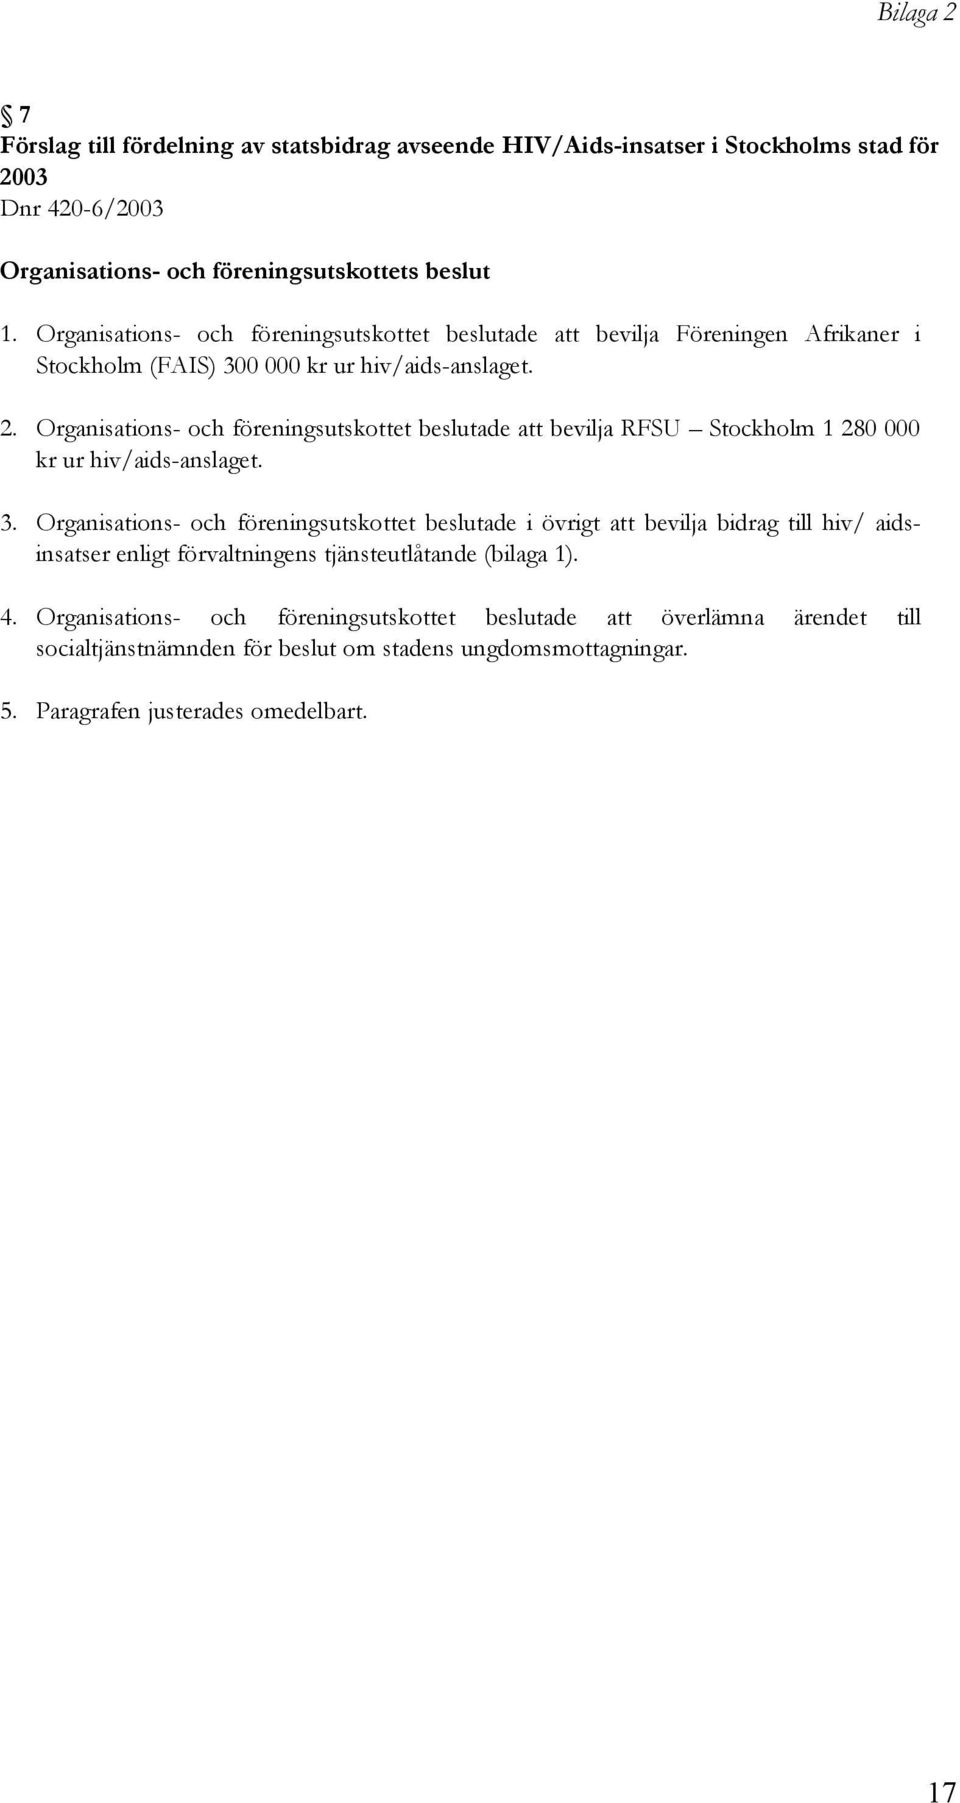 Organisations- och föreningsutskottet beslutade att bevilja RFSU Stockholm 1 280 000 kr ur hiv/aids-anslaget. 3.